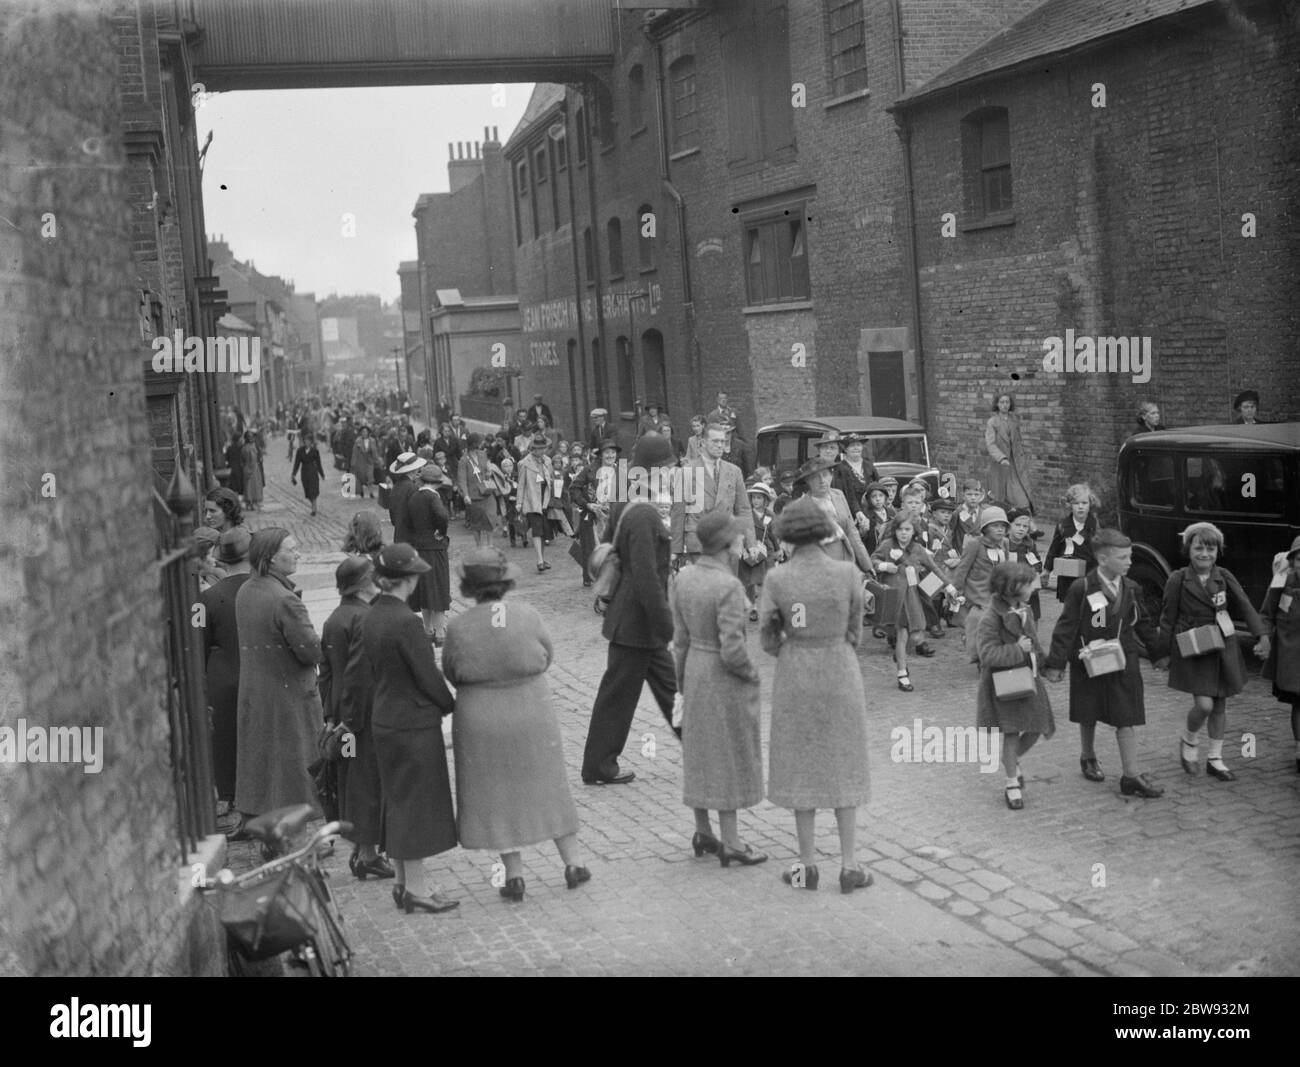 Als Reaktion auf die Gefahren des Krieges hat die britische Regierung ein Programm zur Evakuierung der Kinder aus den großen städtischen Zentren in private Wohnungen in ländlichen Gebieten gestartet. Foto zeigt Mütter und Kinder bei Evakuierungsverfahren in Gravesend, Kent. 1939 Stockfoto